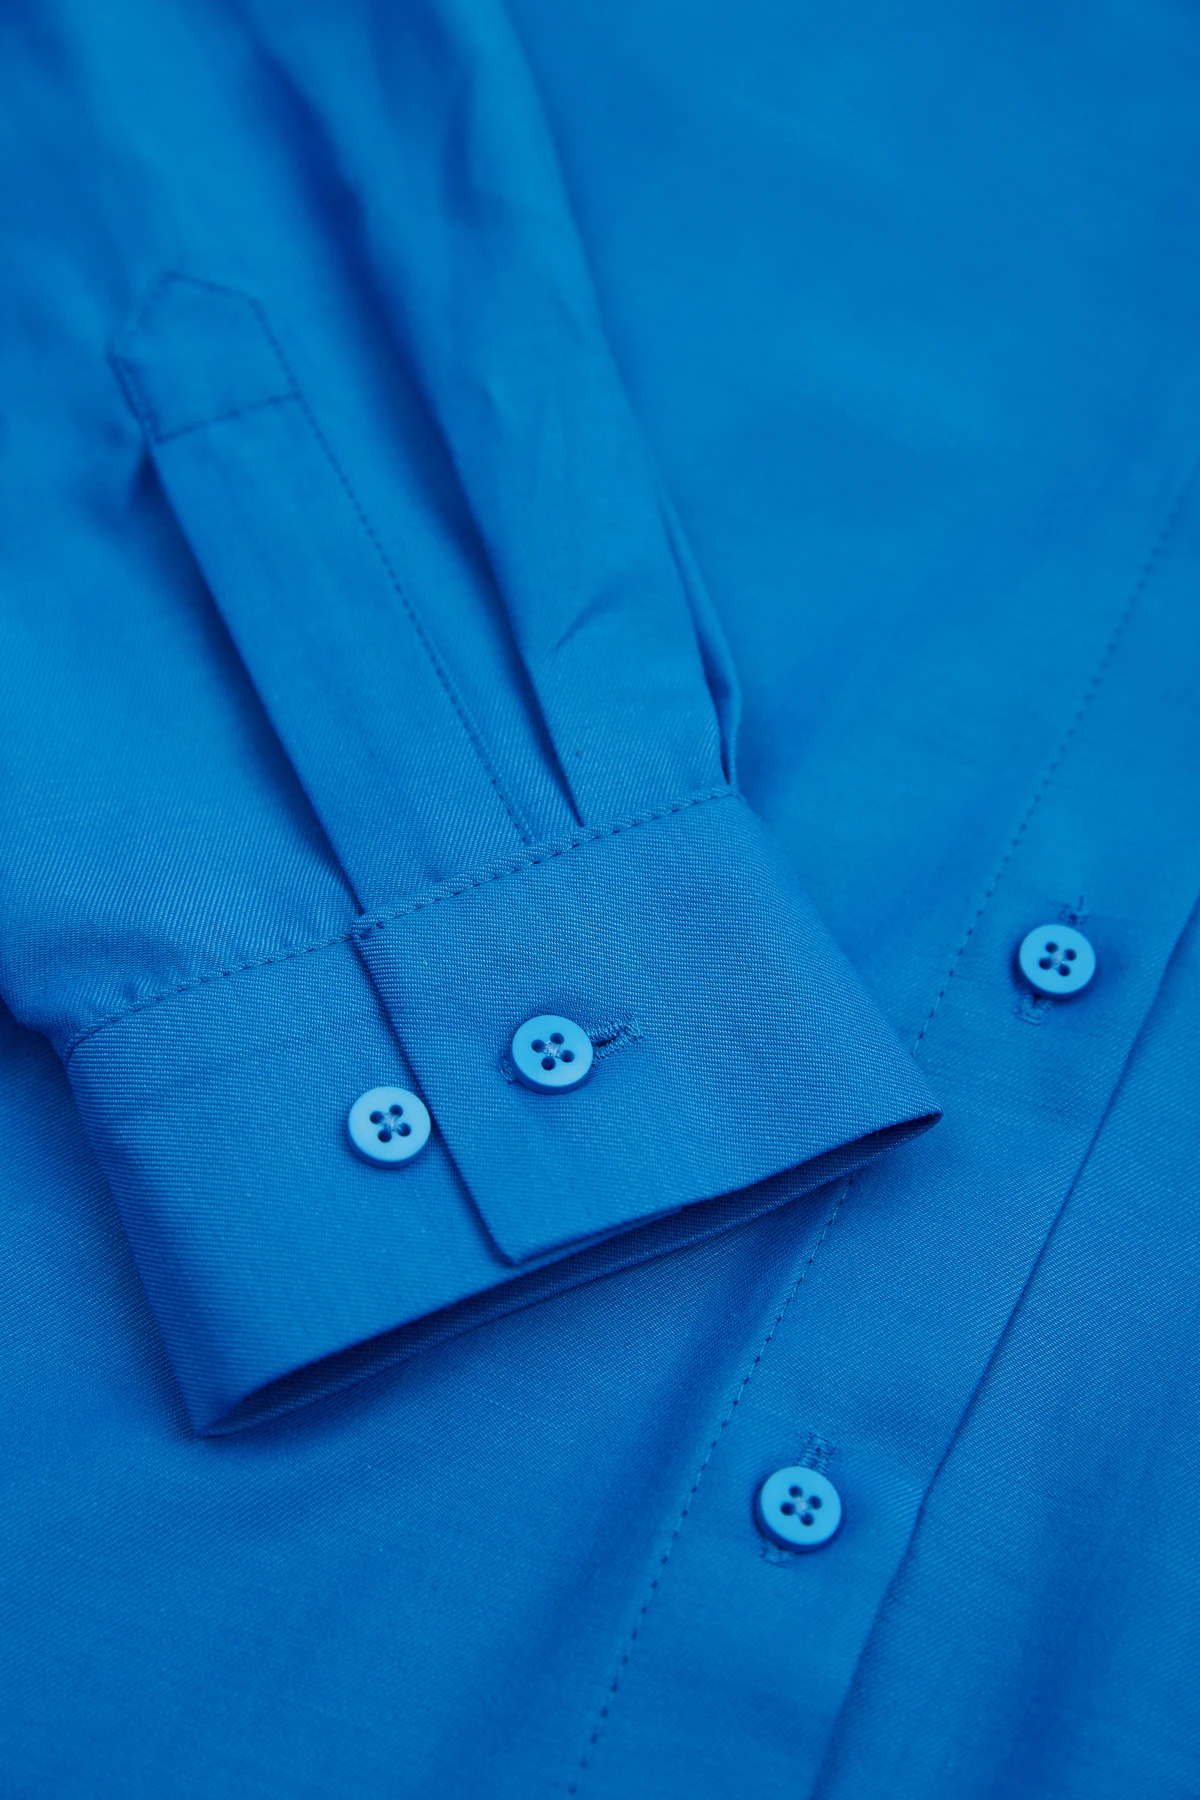 Loose-fit blue cotton shirt, photo 3